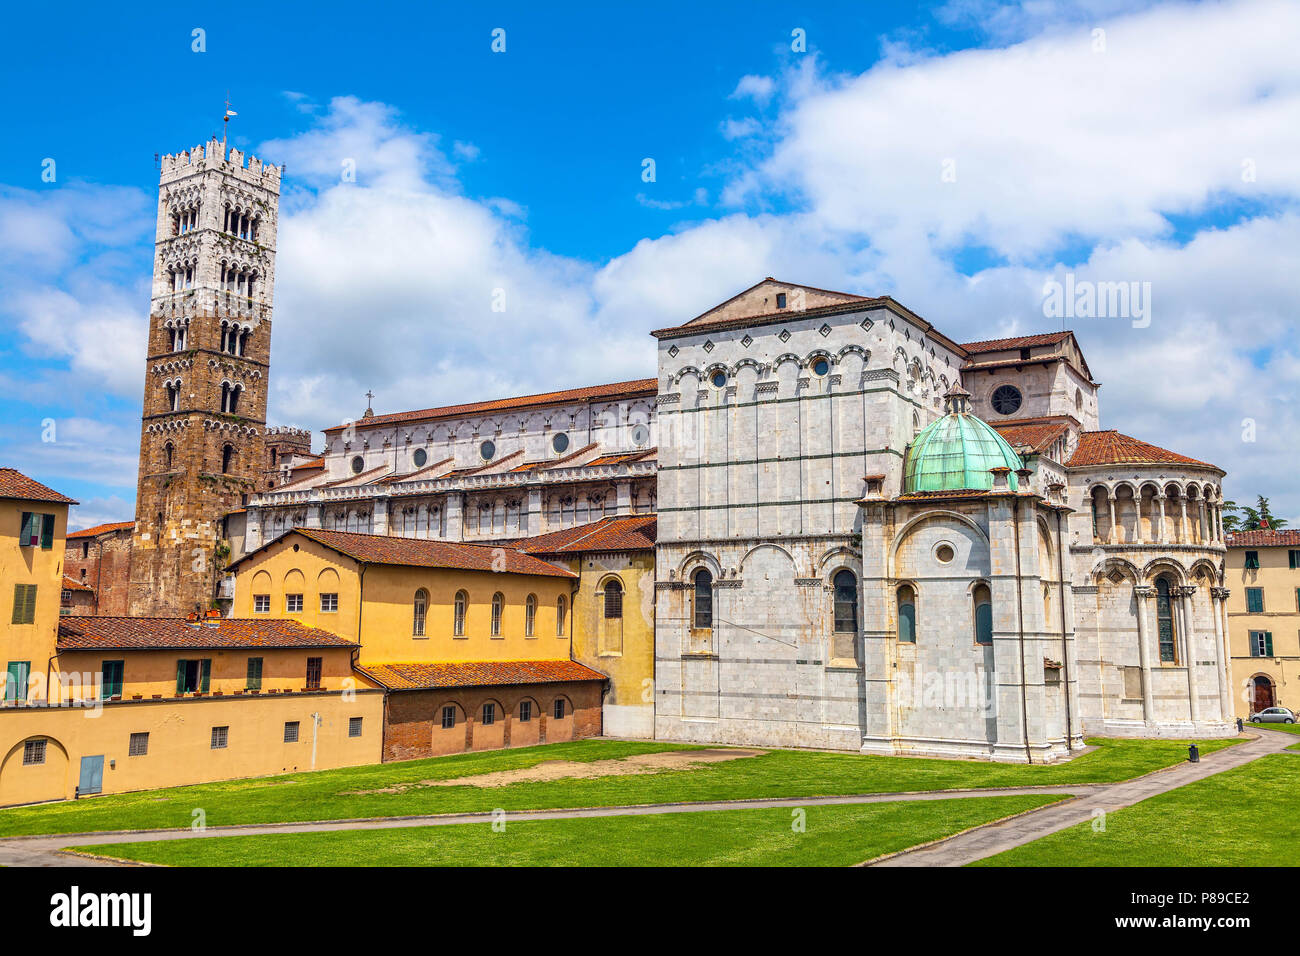 La Cattedrale di San Martino nella città italiana di Lucca. Foto Stock